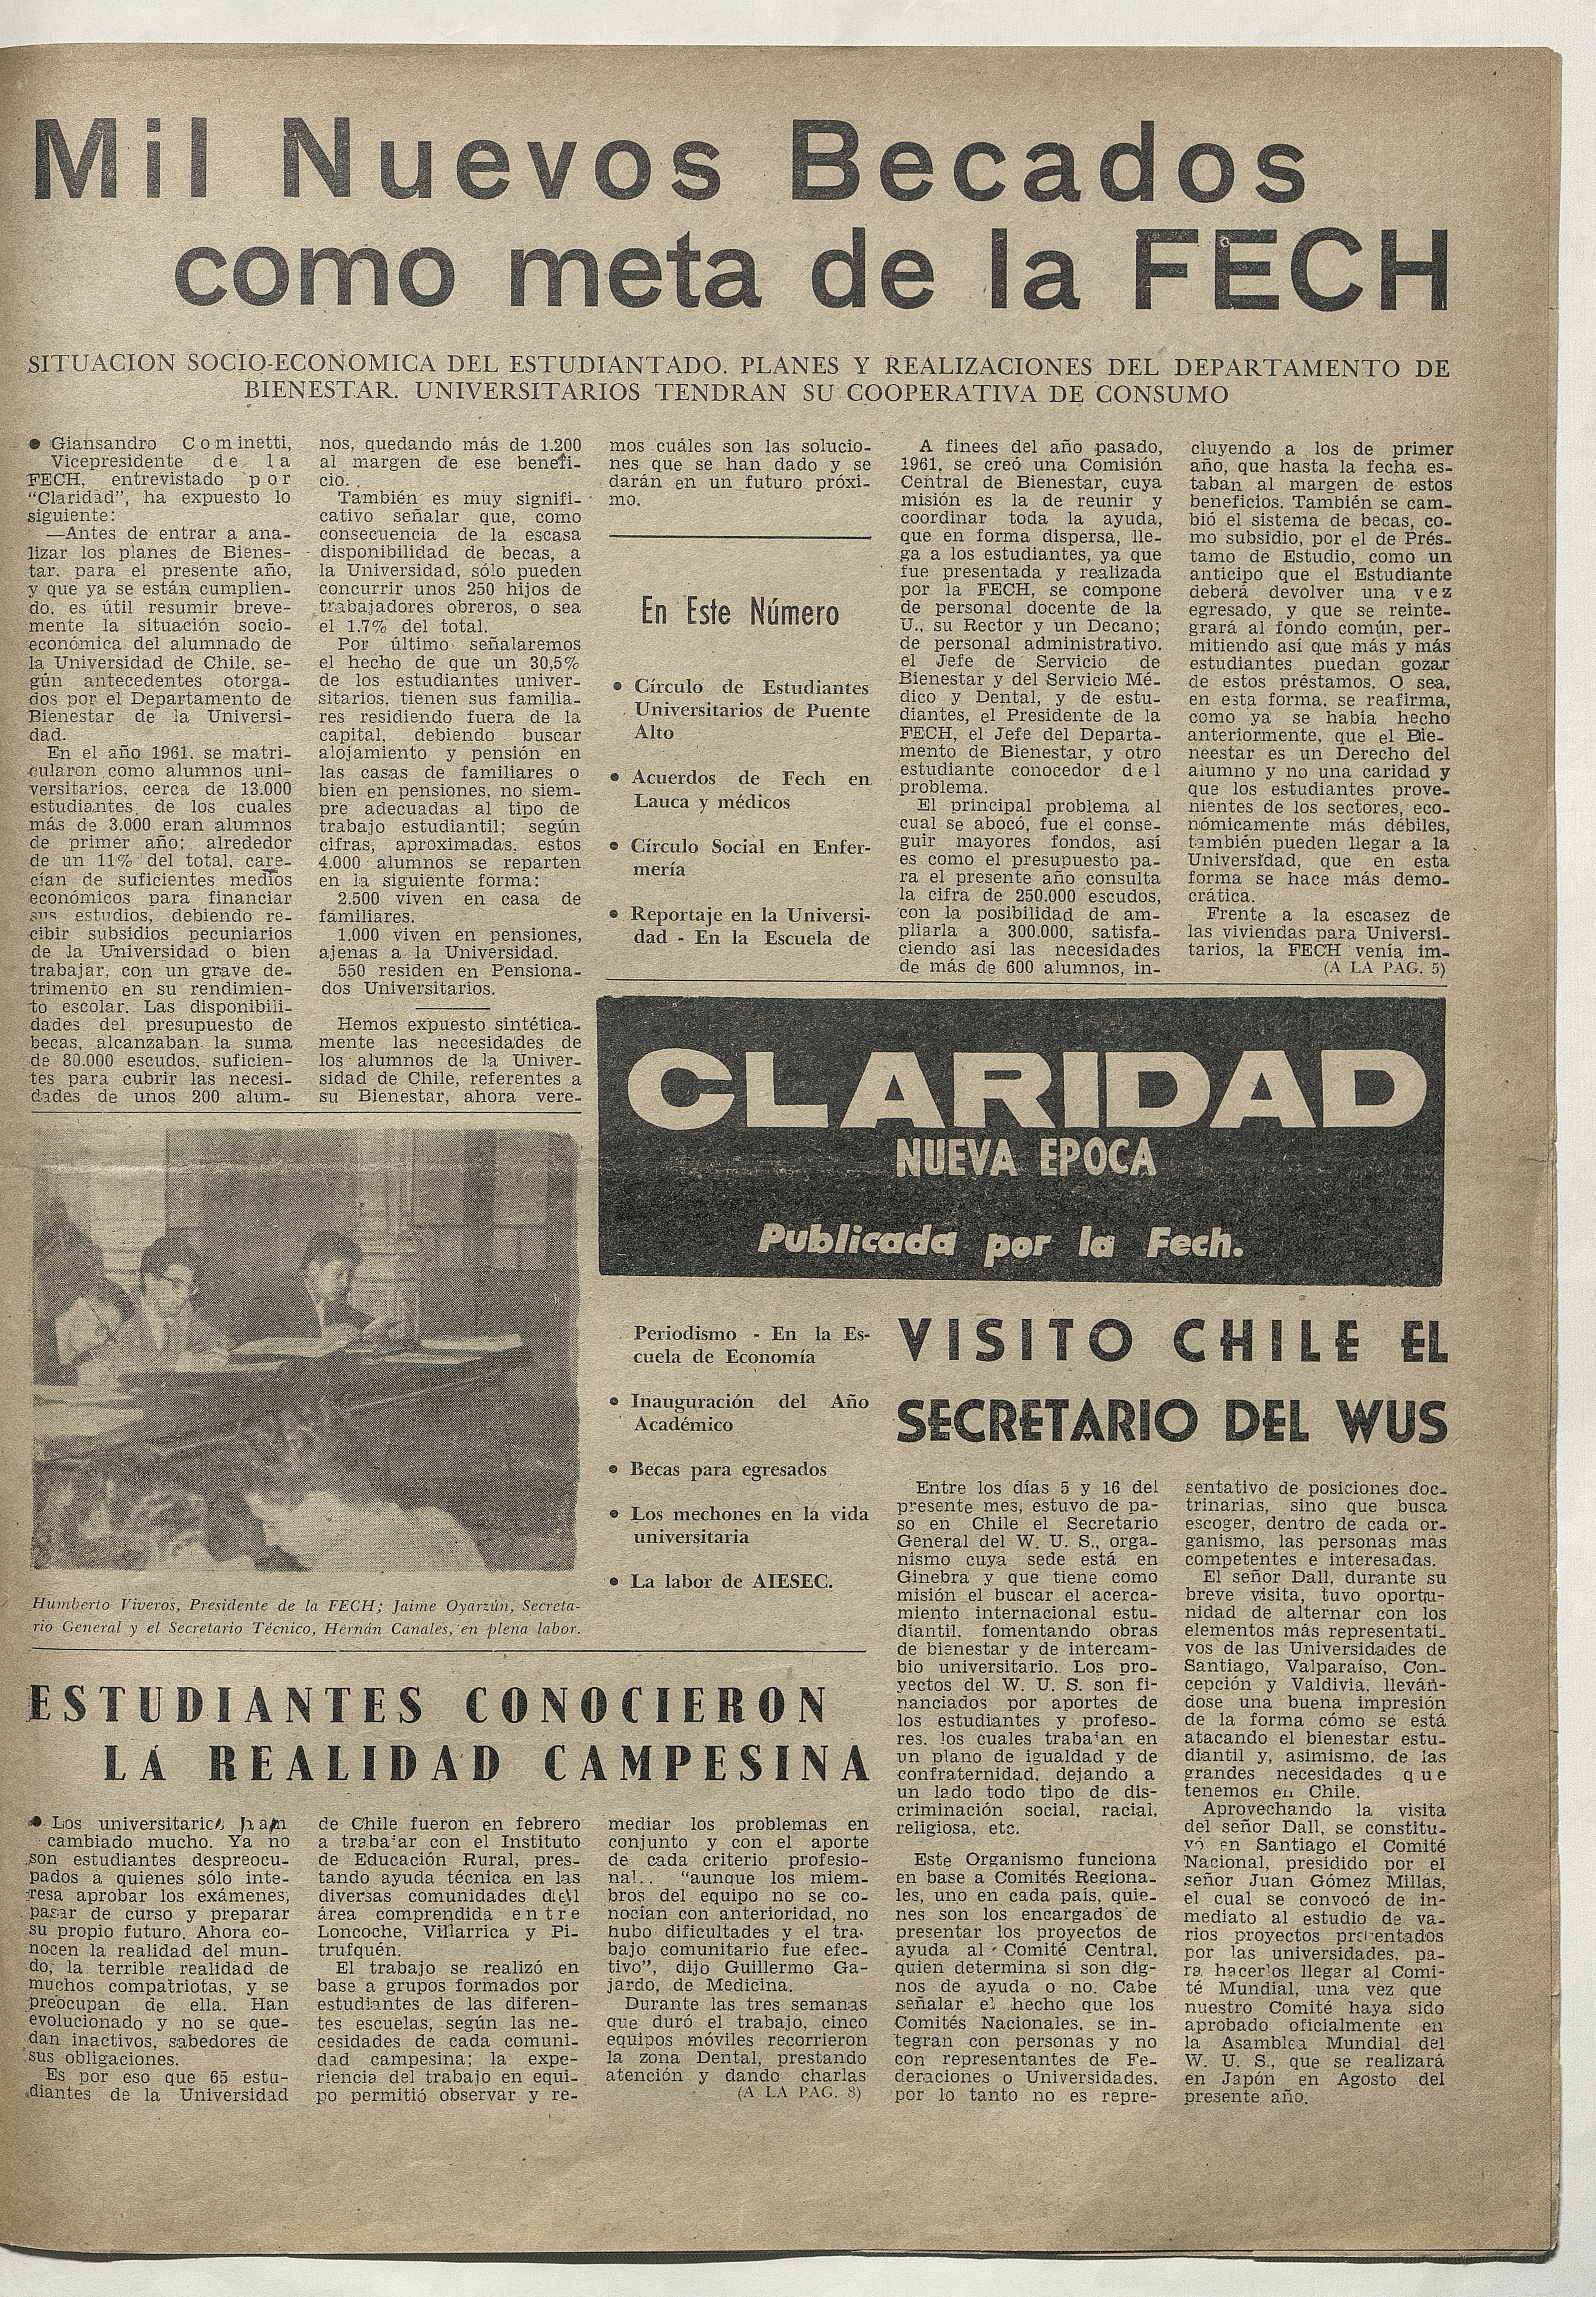 Claridad, 4 de mayo de 1962